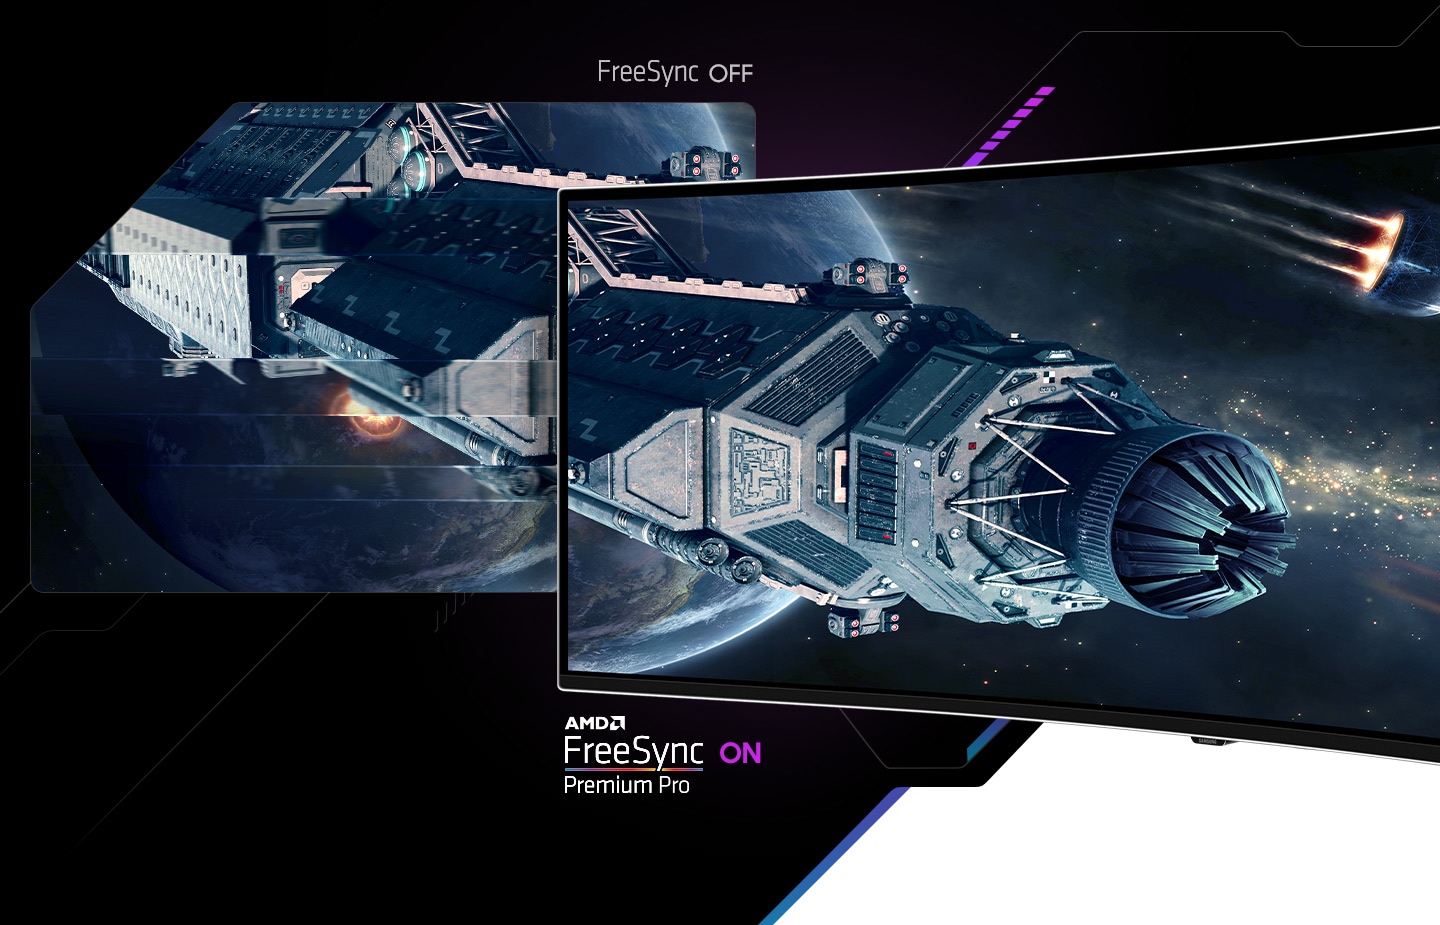 Một trạm không gian được thấy ở phía trước một hành tinh trên hai màn hình. Phi thuyền ở màn hình bên trái bị mờ với dòng chữ “FreeSync OFF” bên dưới, còn bên phải thì sắc nét và rõ ràng với dòng chữ “AMD FreeSync Premium Pro ON” bên dưới.